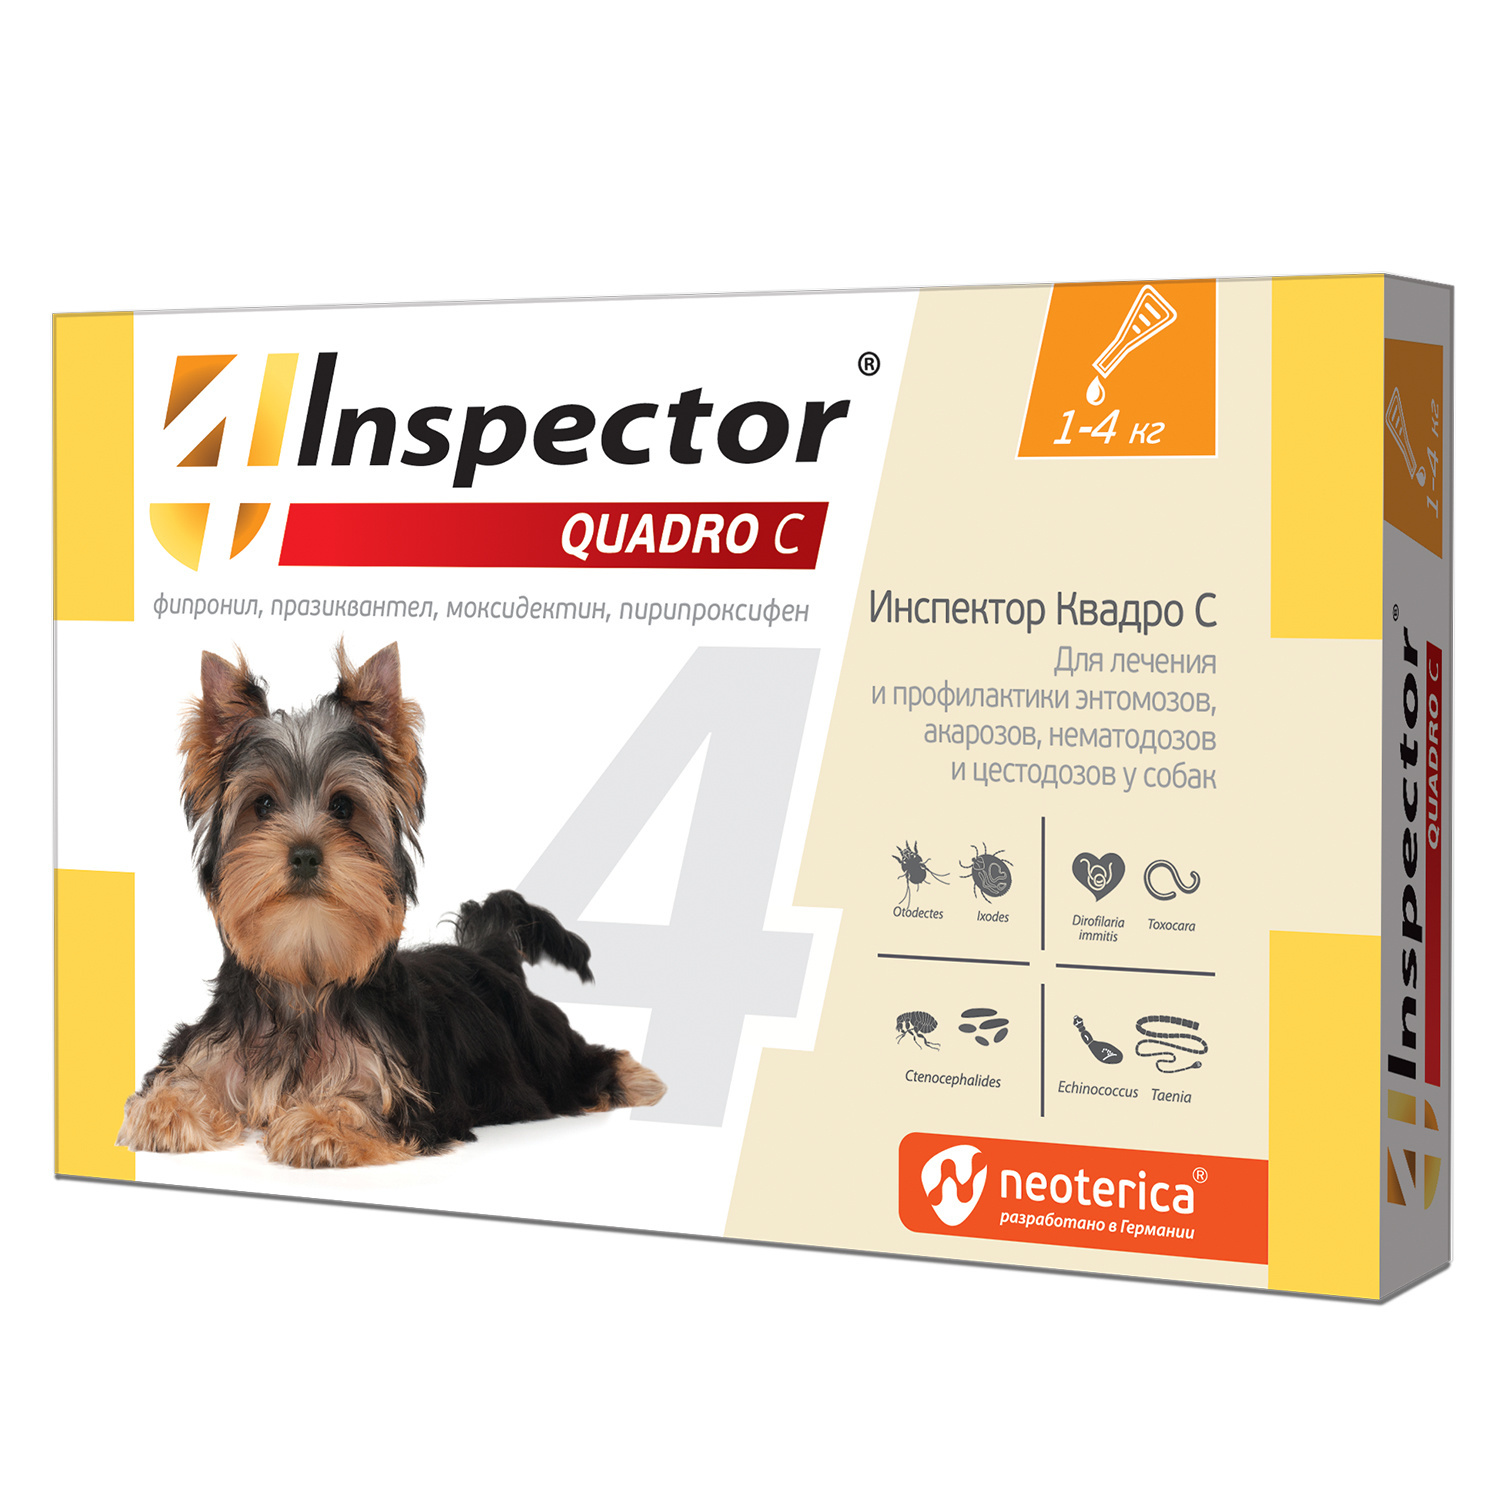 Inspector Inspector quadro капли на холку для собак весом 1-4 кг от клещей, насекомых, глистов (18 г)